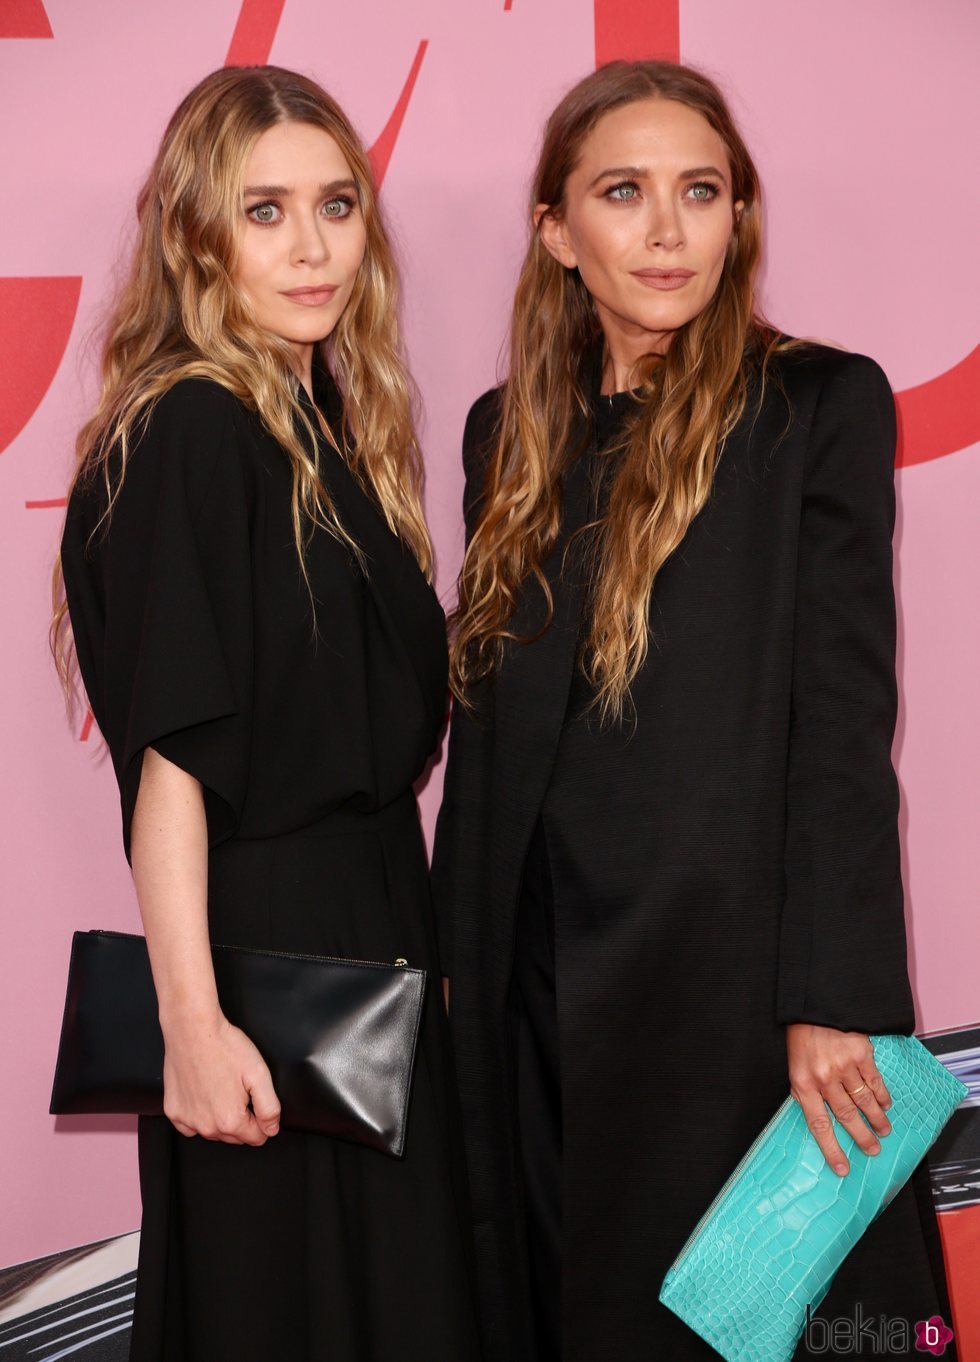 Mary Kate Olsen y Ashley Olsen  en la alfombra roja de los CFDA FASHION AWARDS 2019